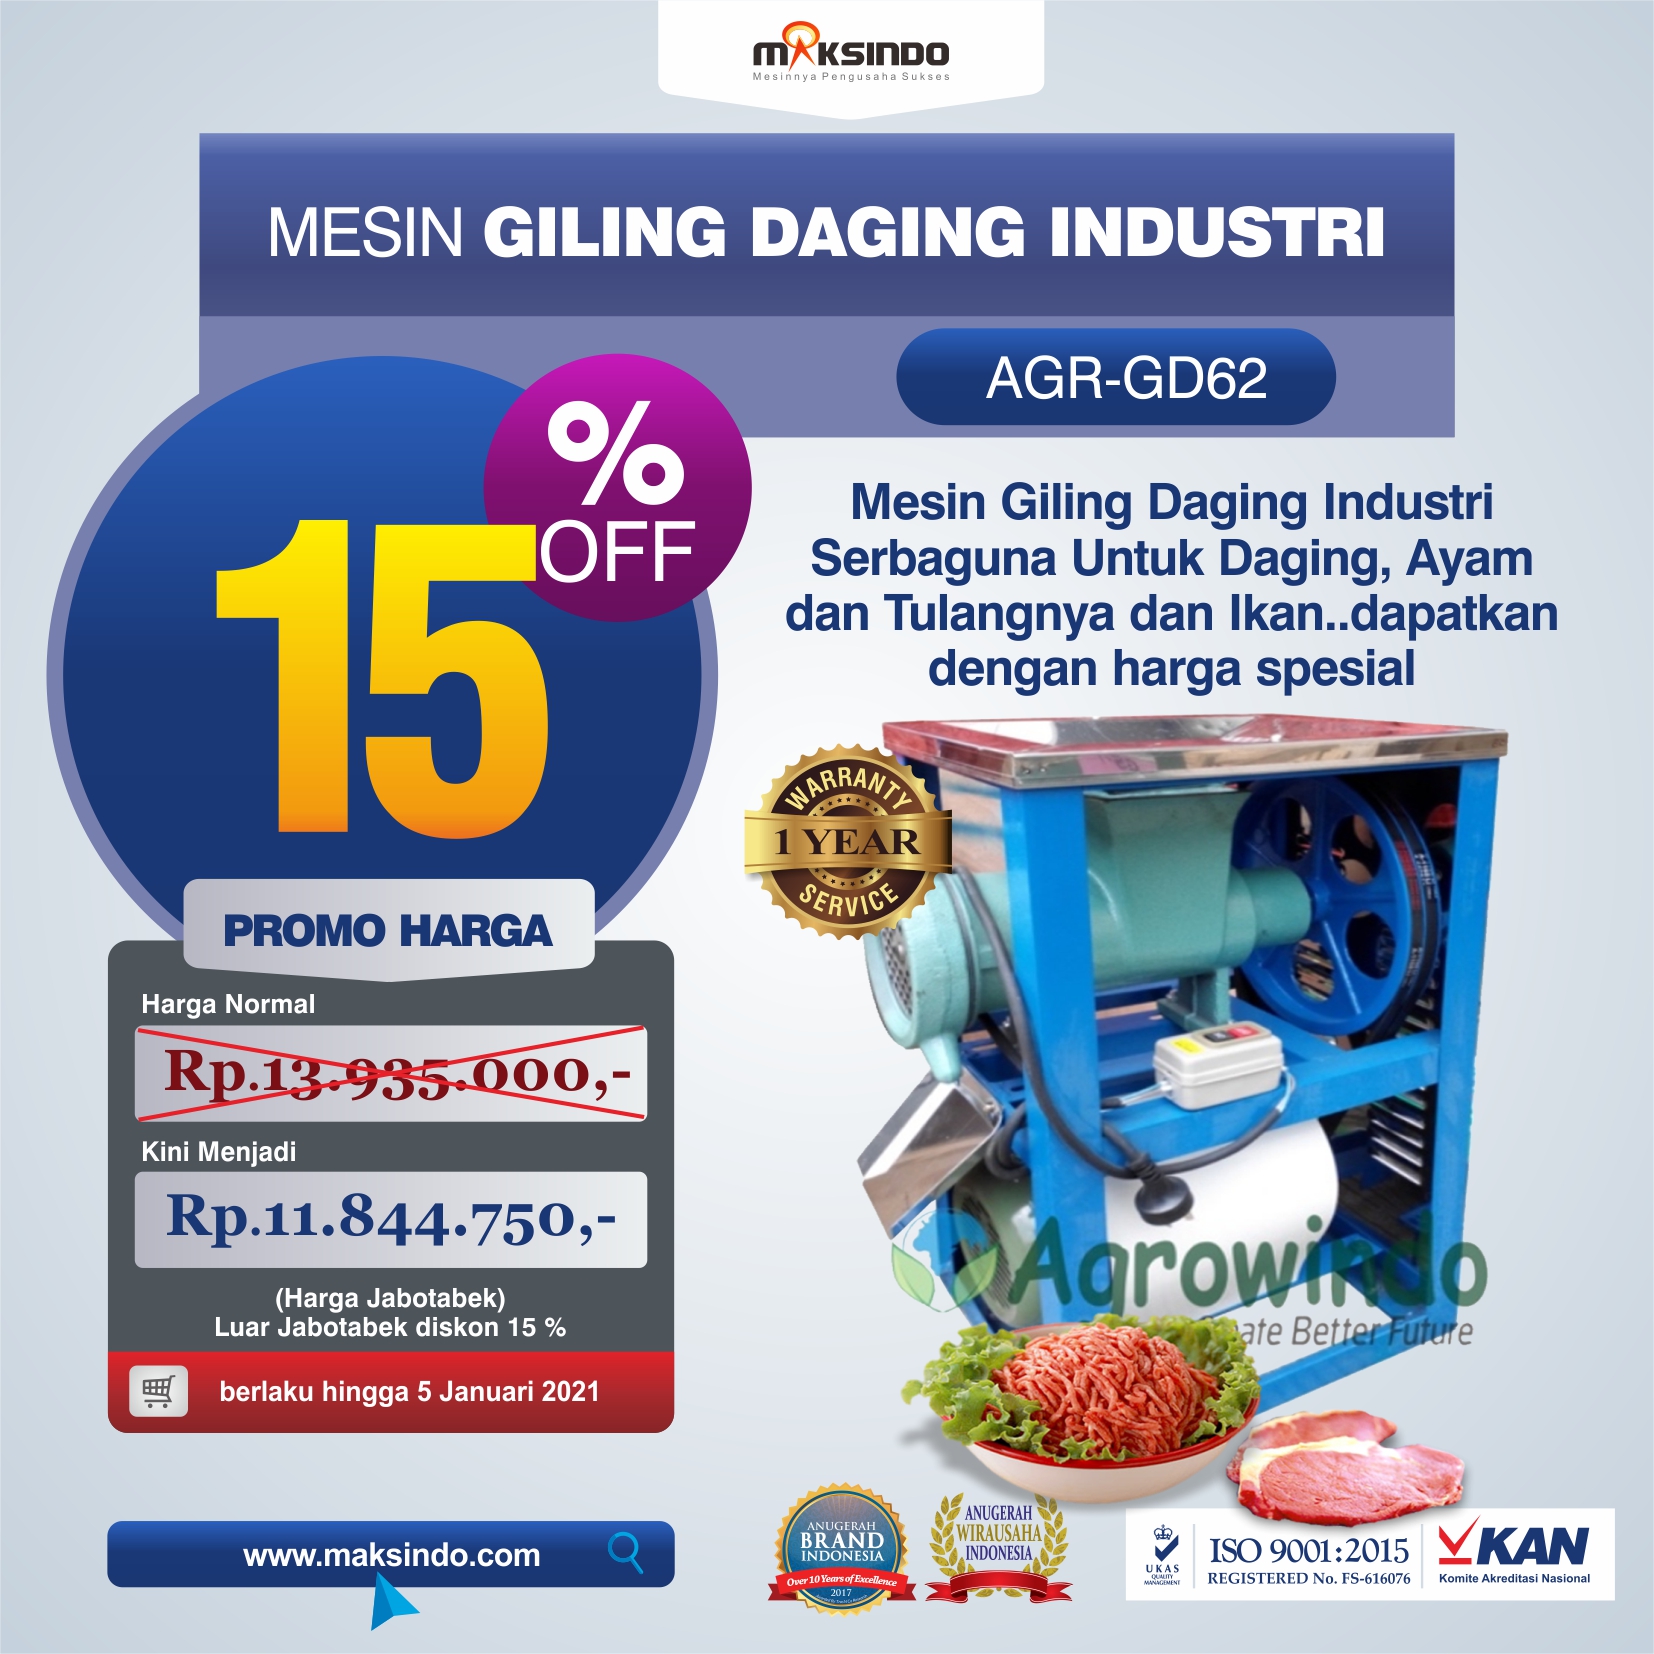 Jual Mesin Giling Daging Industri (AGR-GD62) di Malang